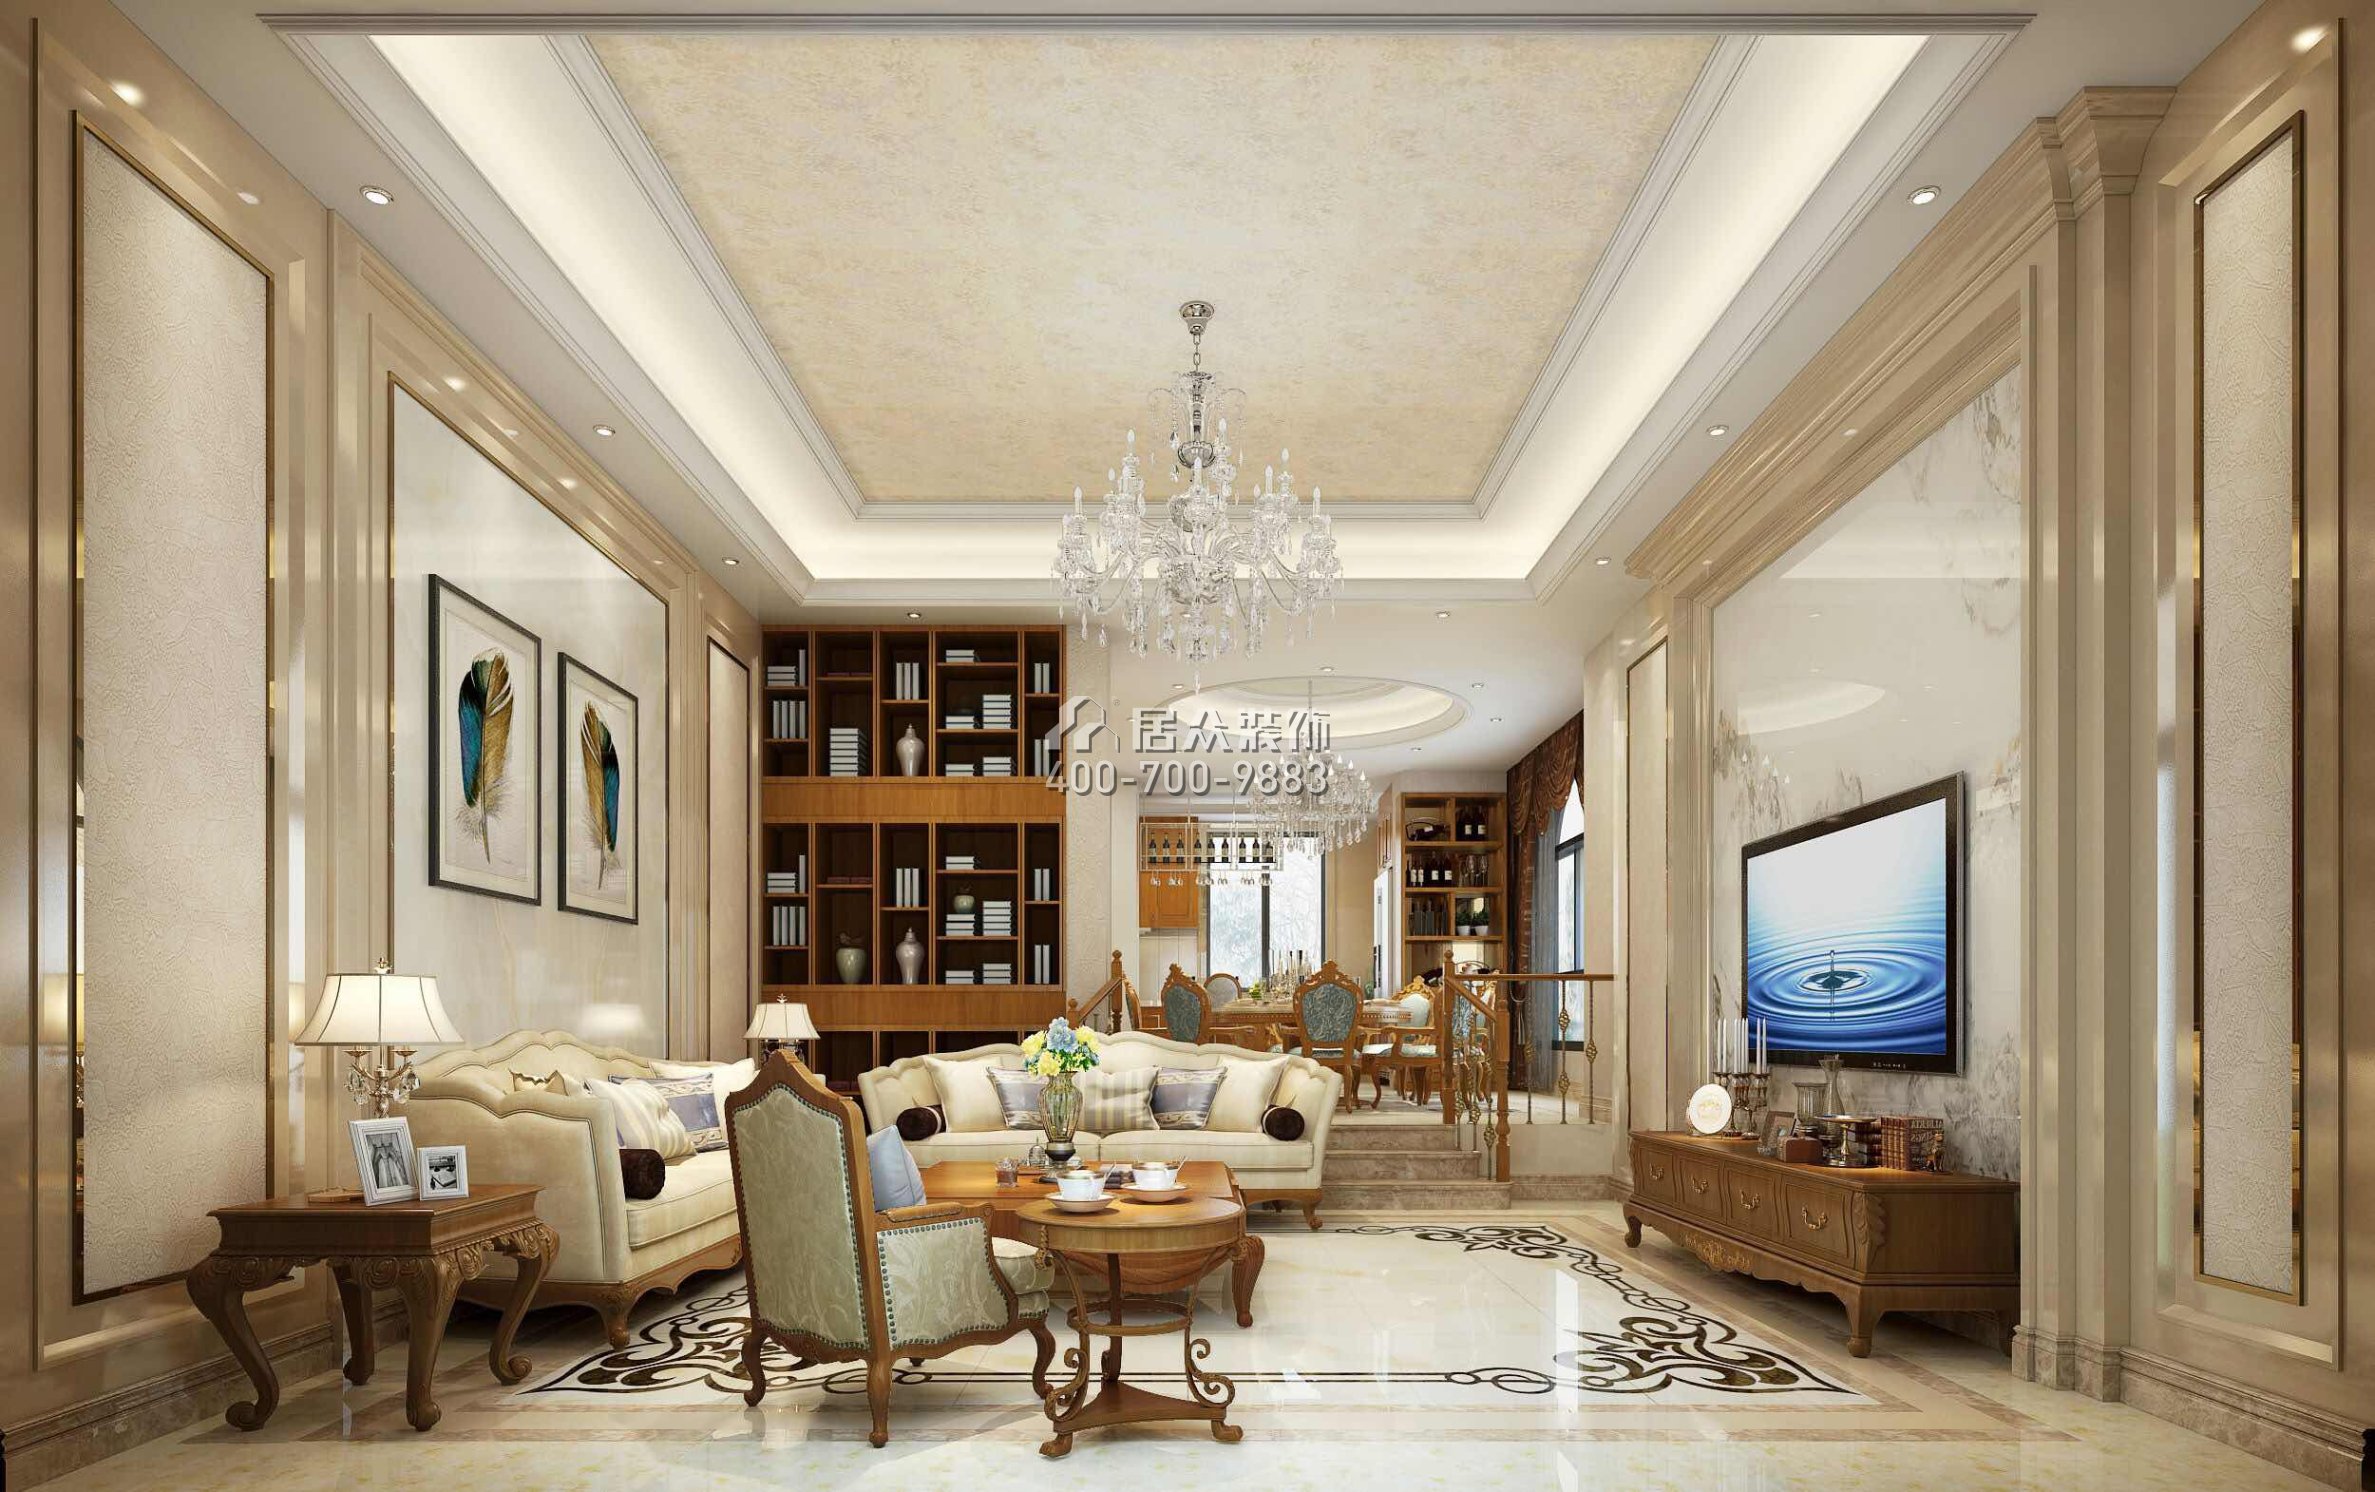 新世纪领居500平方米欧式风格别墅户型客厅装修效果图